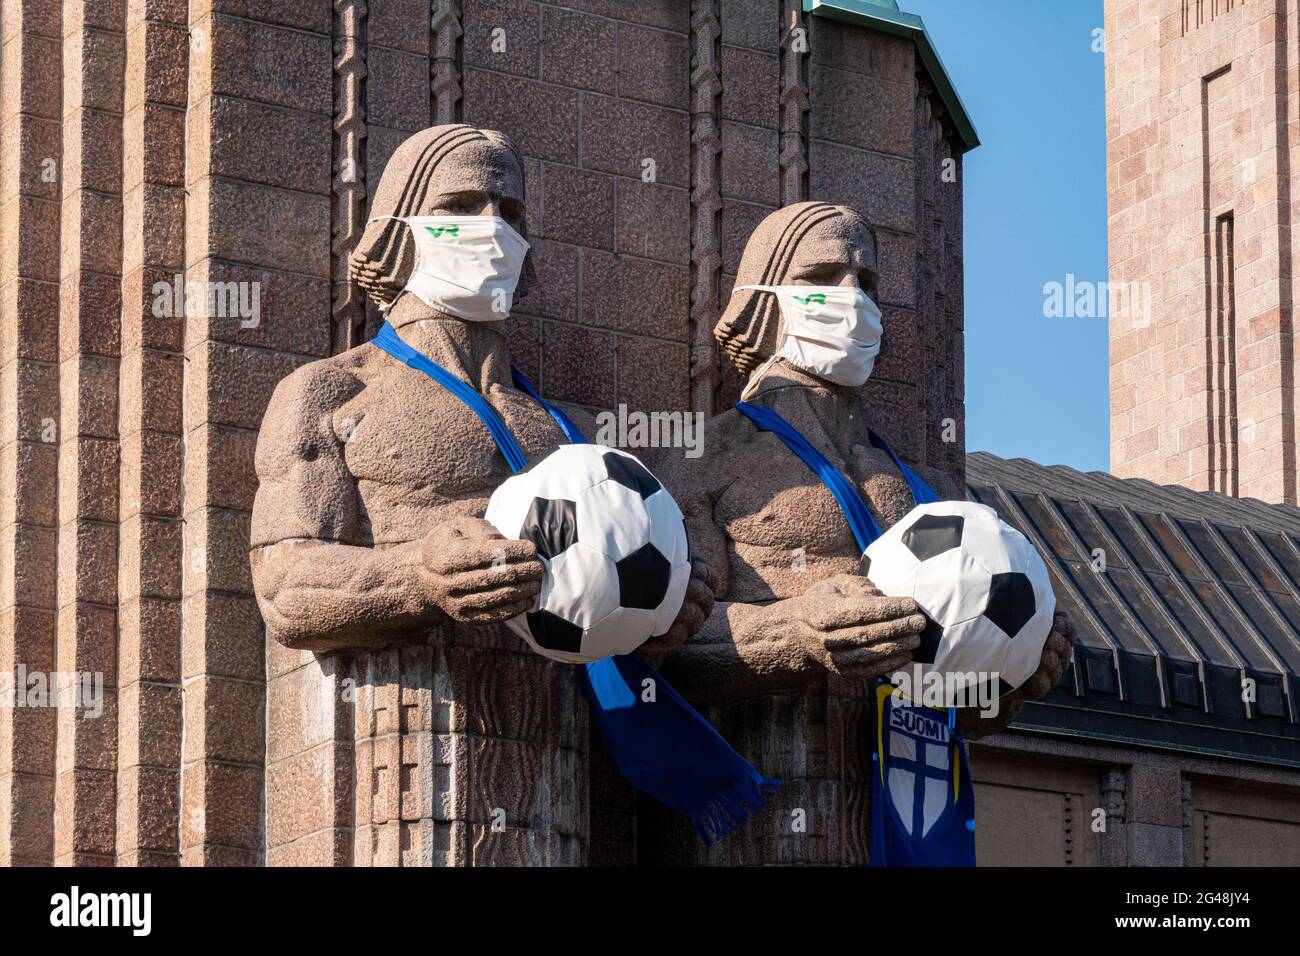 Statuen im Hauptbahnhof von Helsinki, die Gesichtsmasken tragen und Fußbälle halten, um die Spiele der Fußball-Europameisterschaft zu feiern Stockfoto